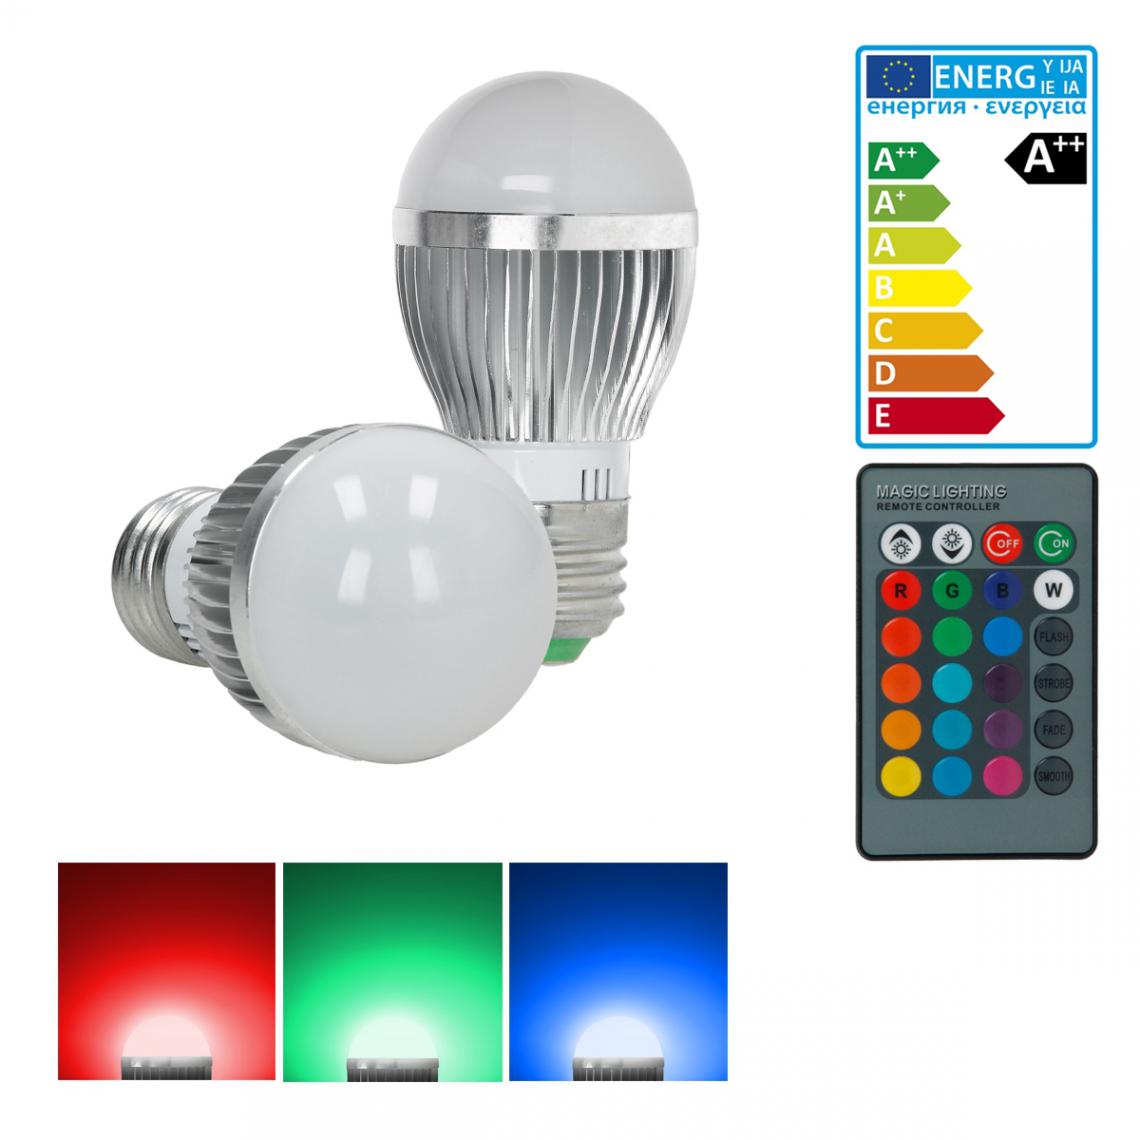 Ecd Germany - Ampoule LED E27 3 Watt RGB - Ampoules LED